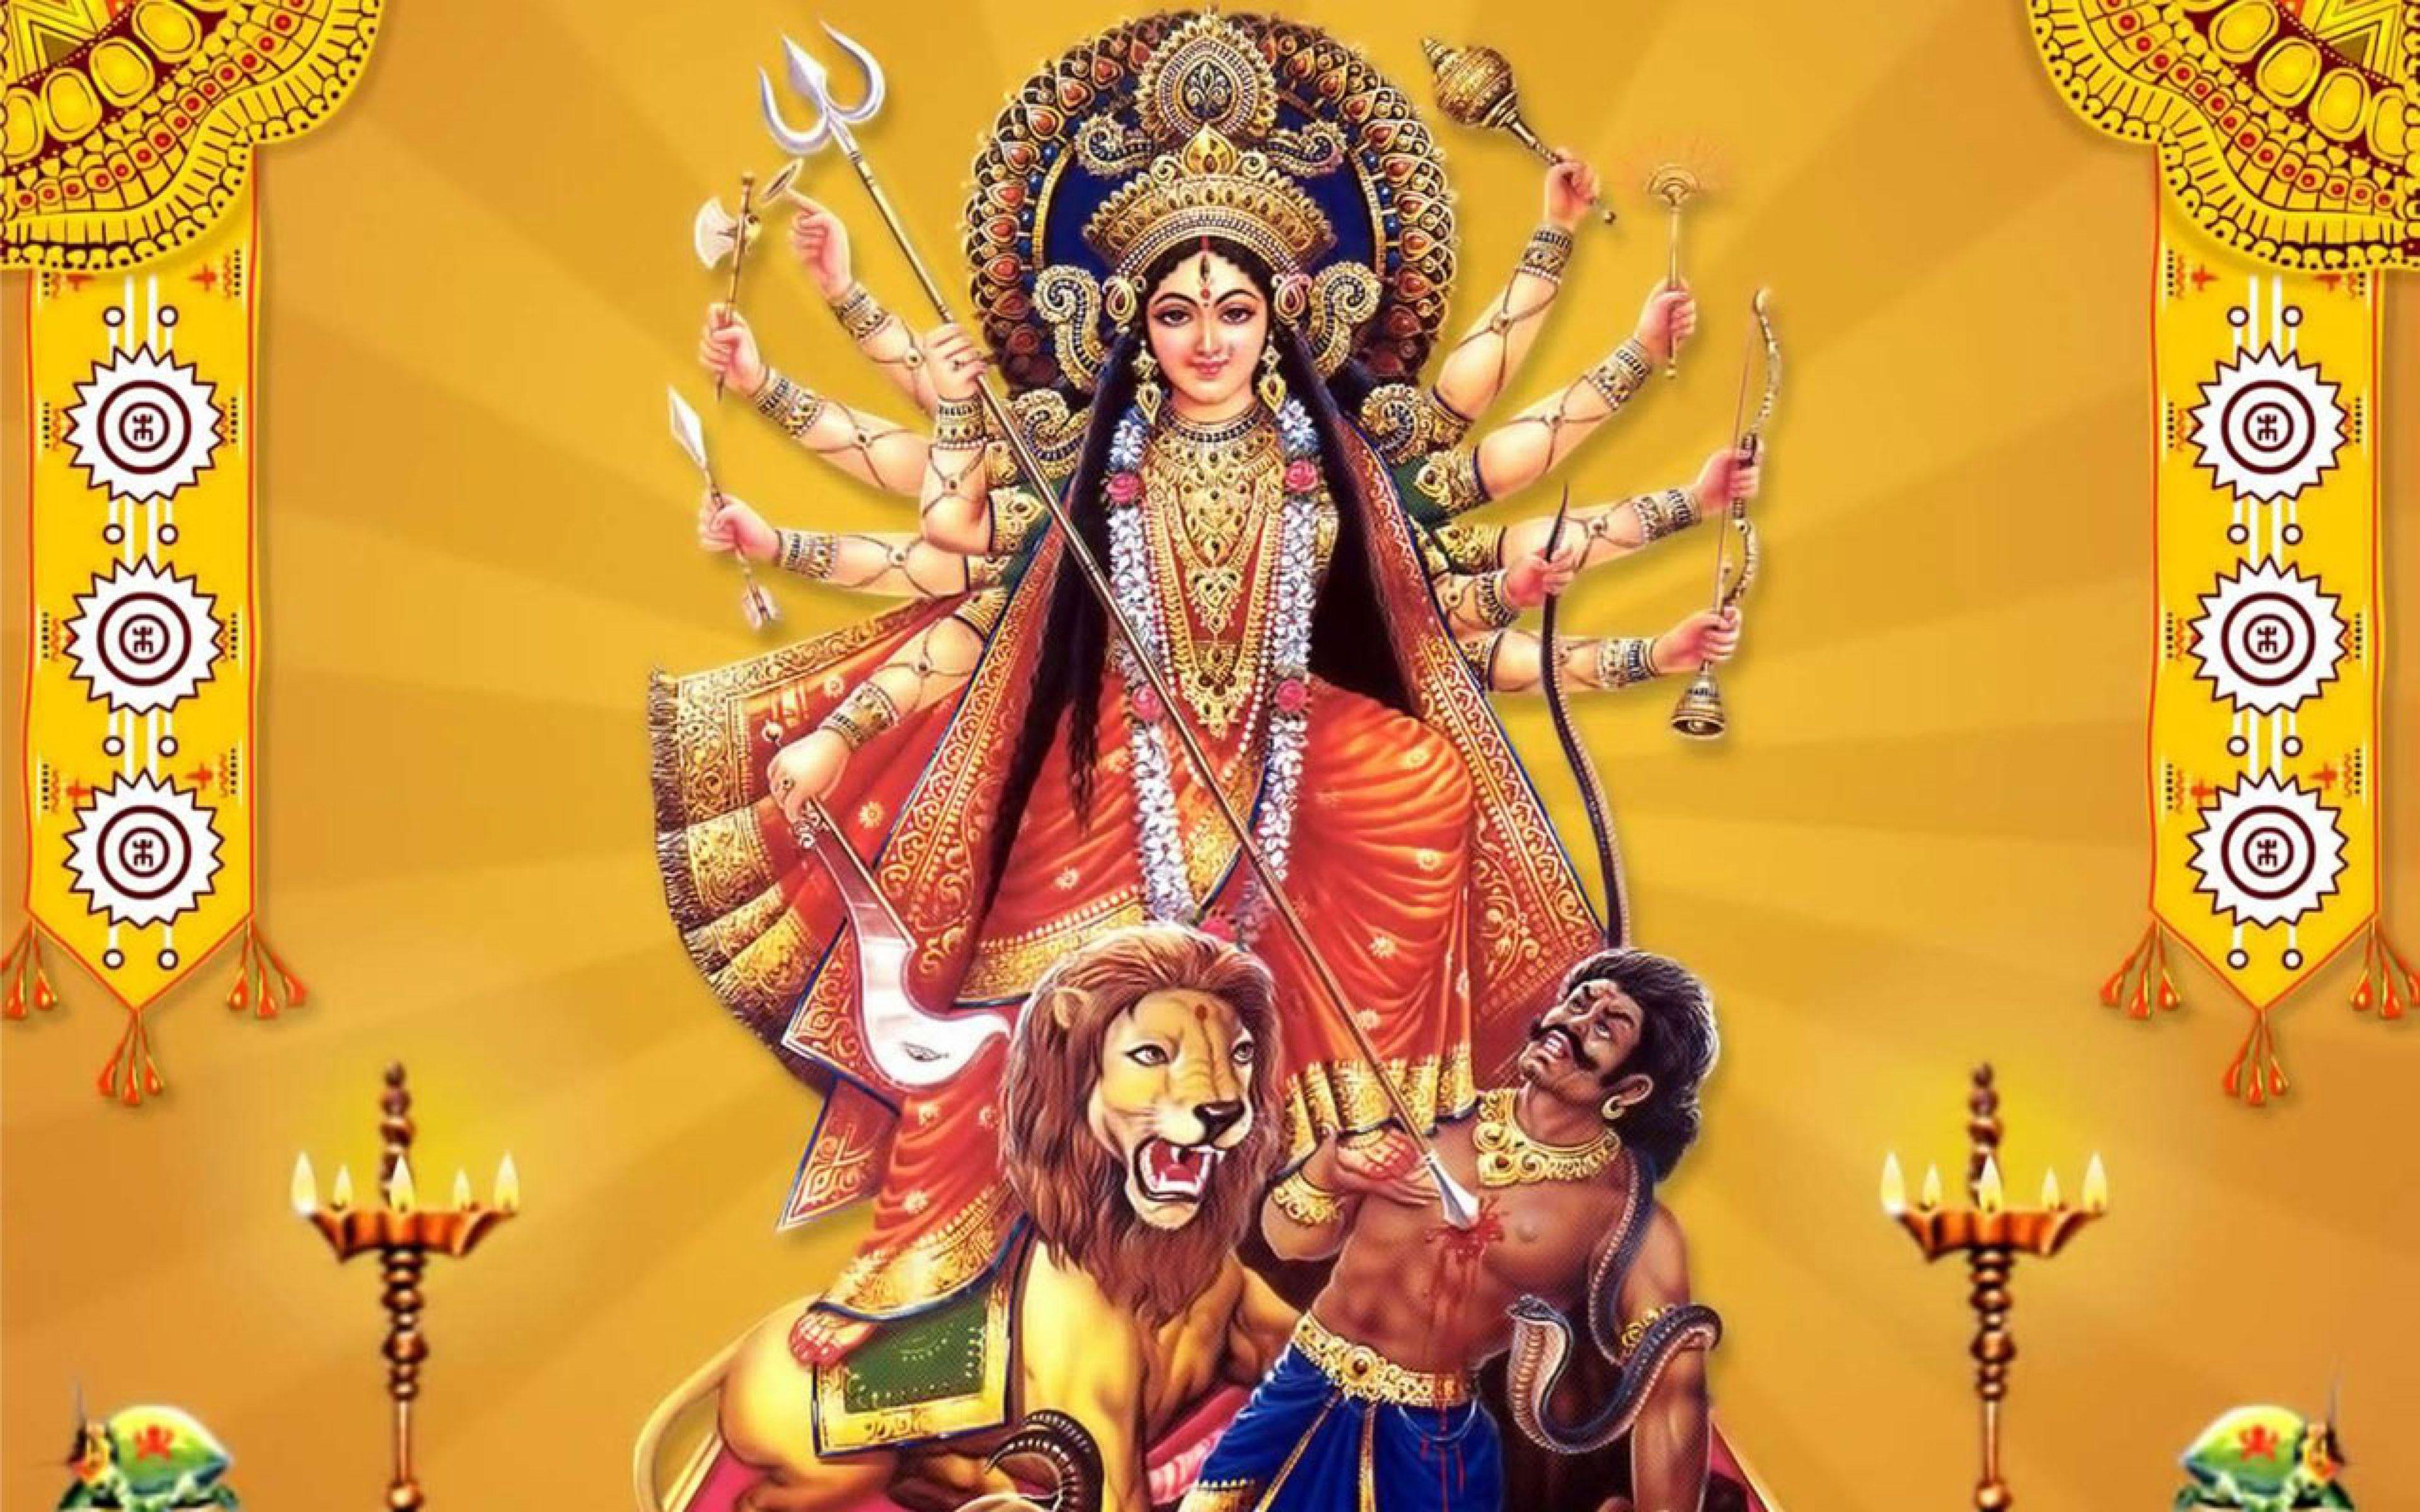 100+] Durga Devi Wallpapers | Wallpapers.com